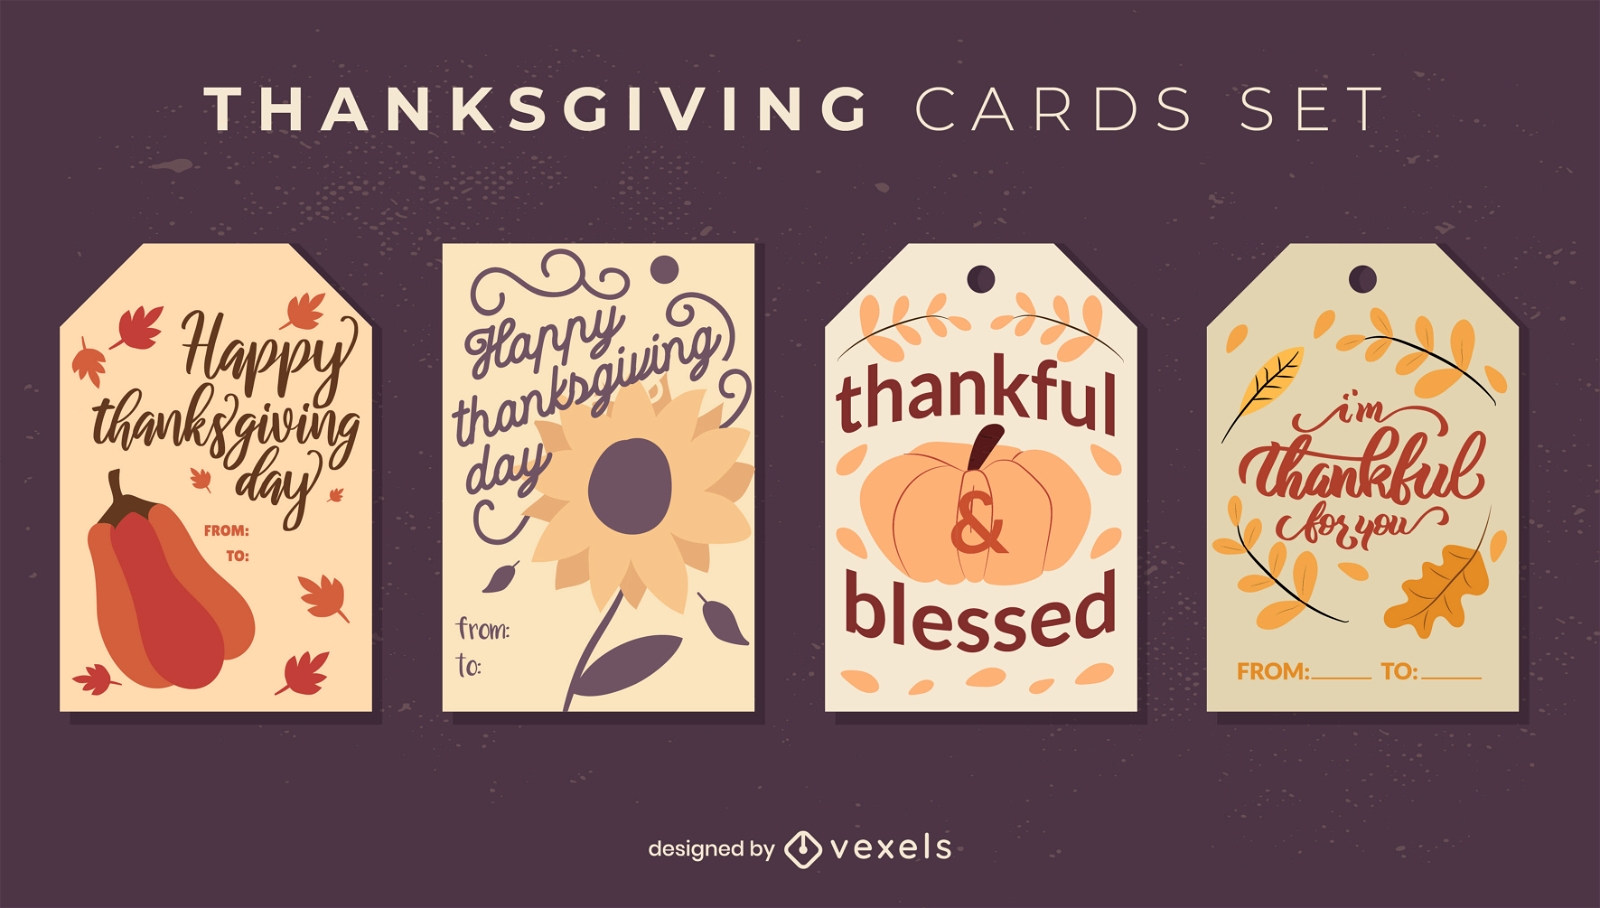 Thanksgiving card set